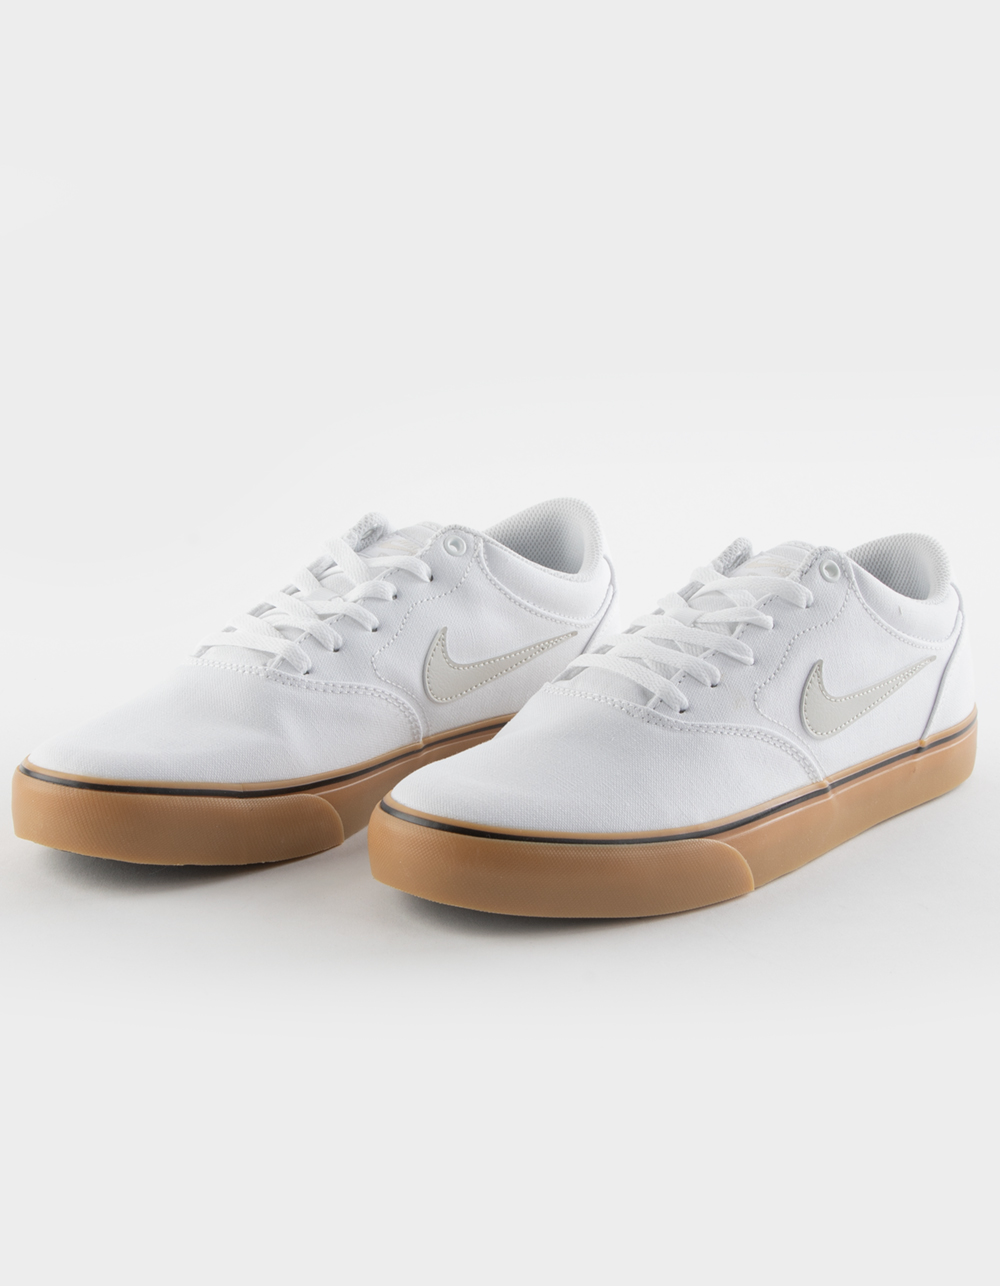 Nike SB Chron 2 White Canvas Skate Shoes